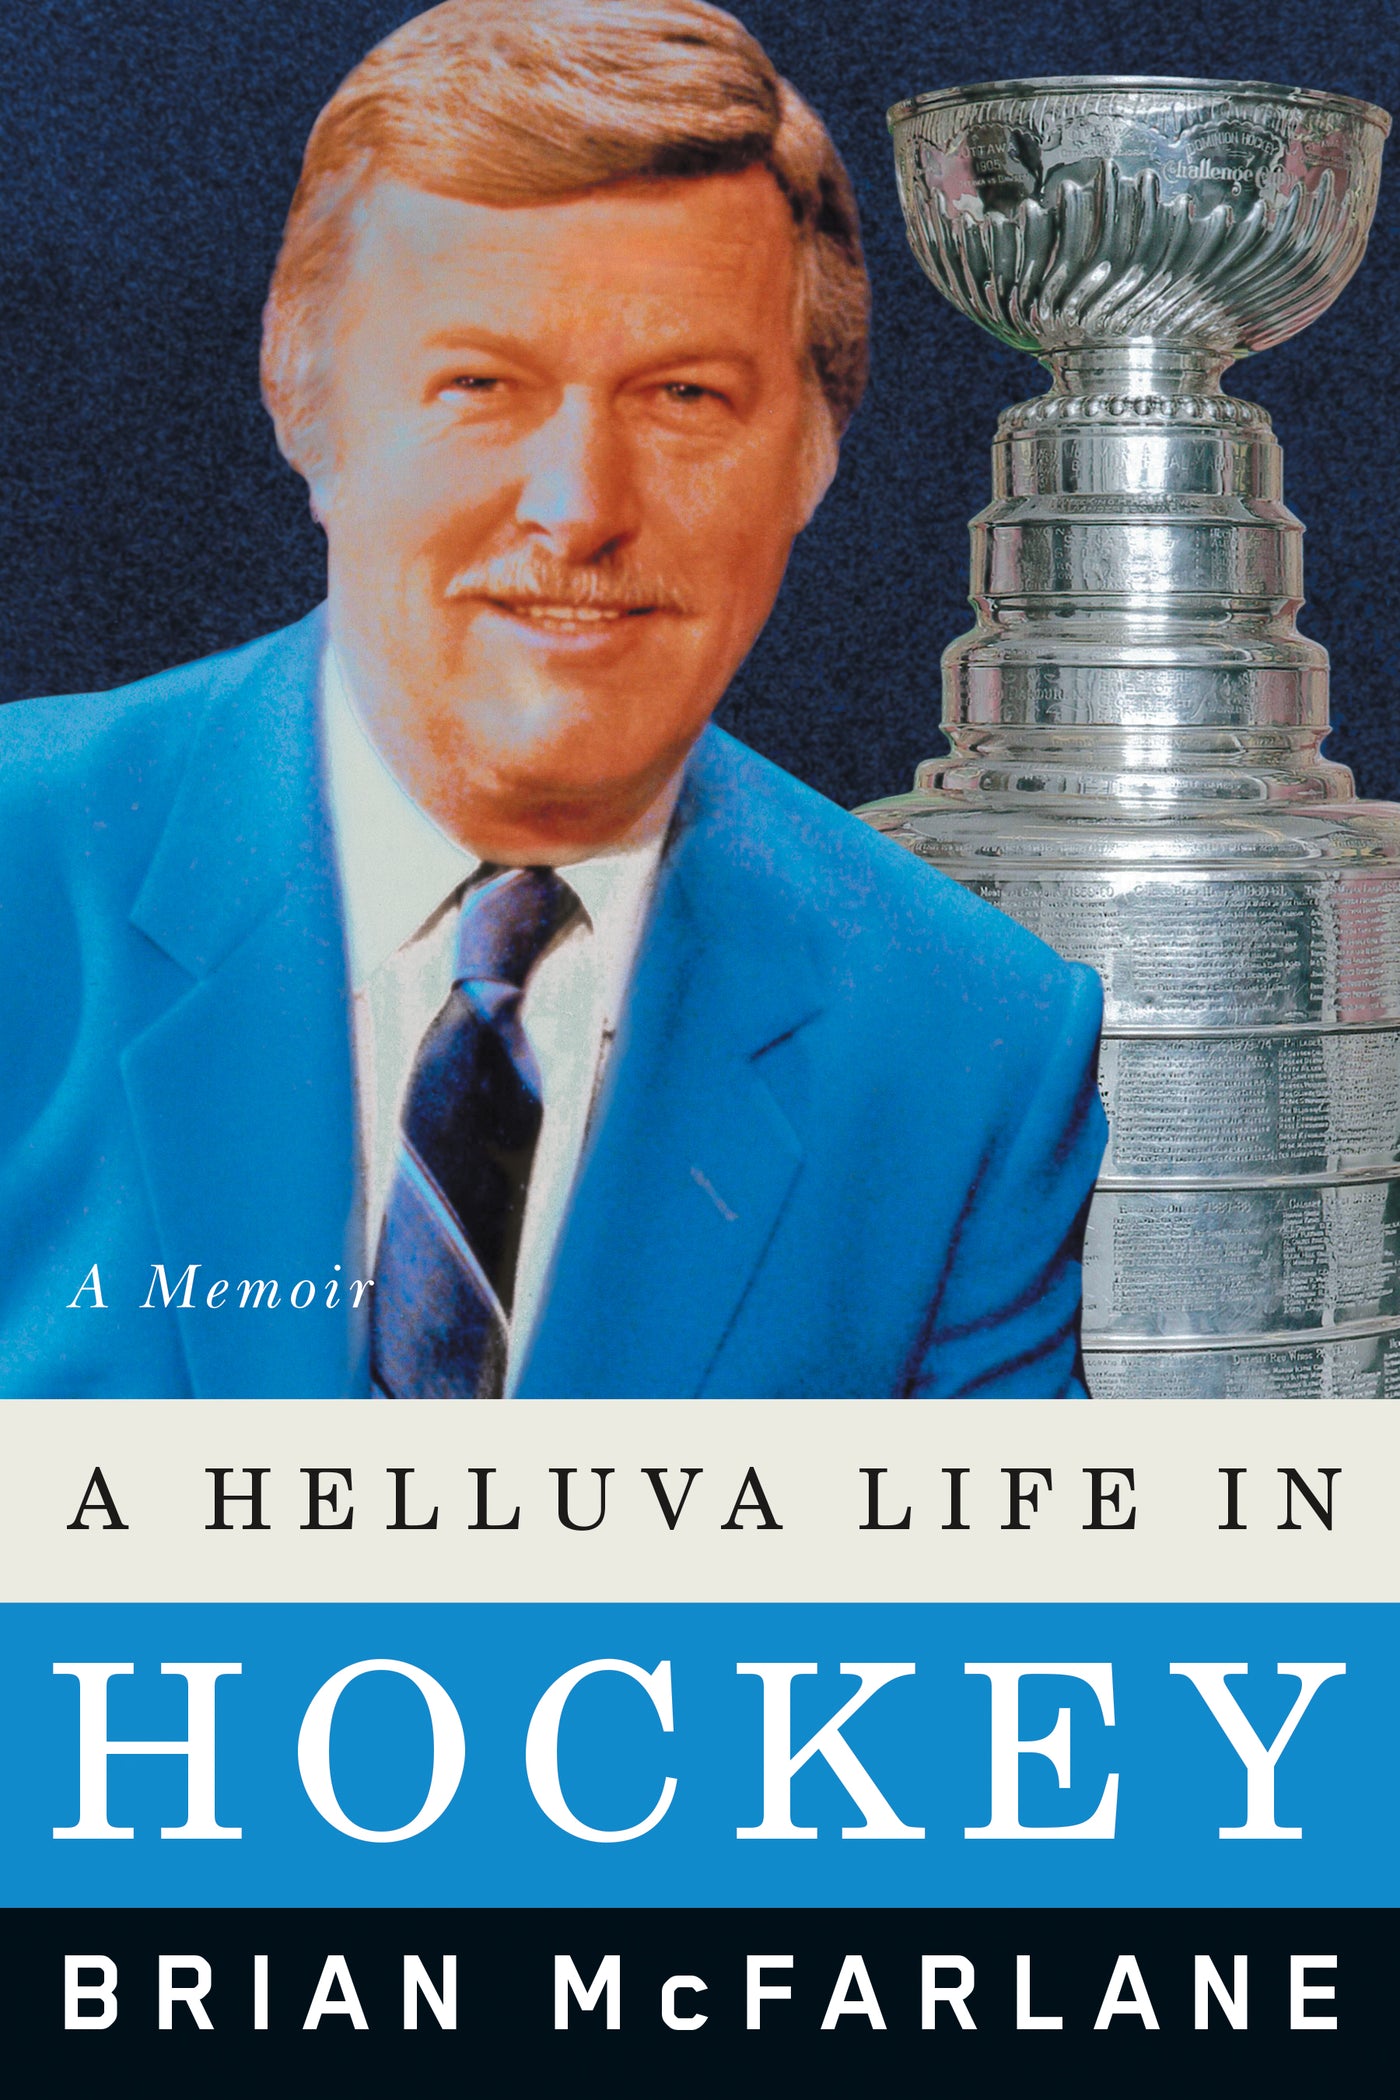 A Helluva Life in Hockey